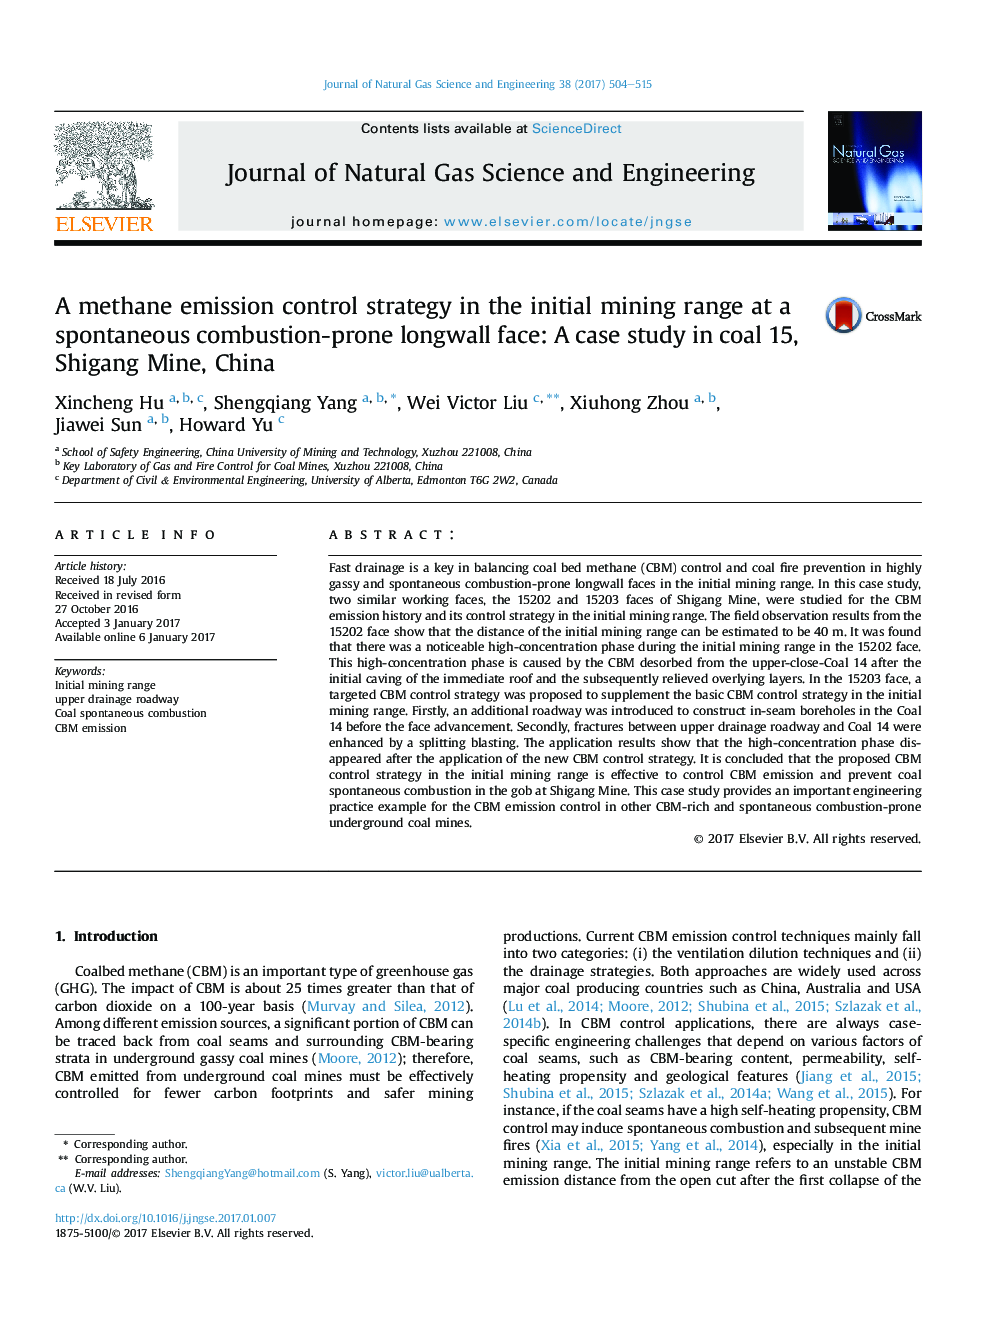 استراتژی کنترل انتشار گاز متان در محدوده اولیه معدن در یک چاه مستطیلی مستعد احتراق: مطالعه موردی در زغال سنگ 15، معدن شانگانگ، چین 